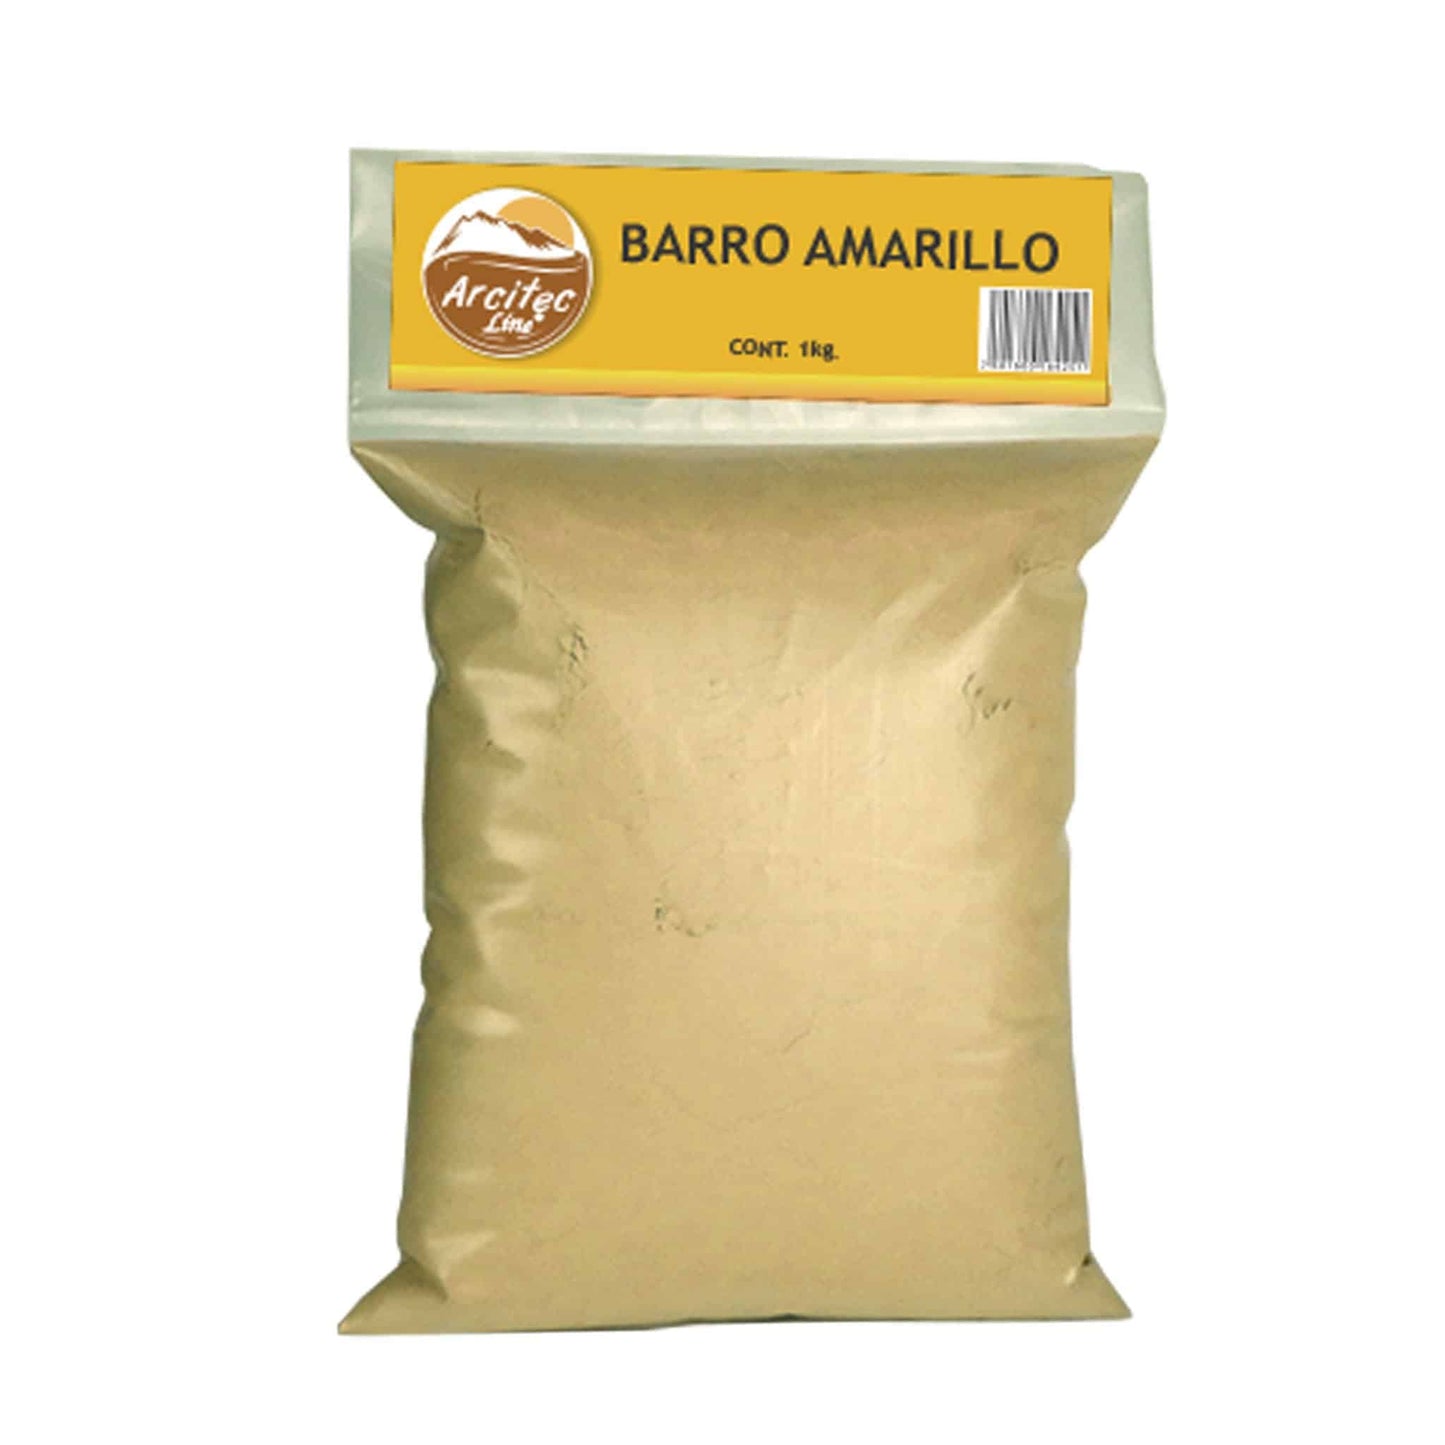 ARCITEC LINE ® barro amarillo 1kg